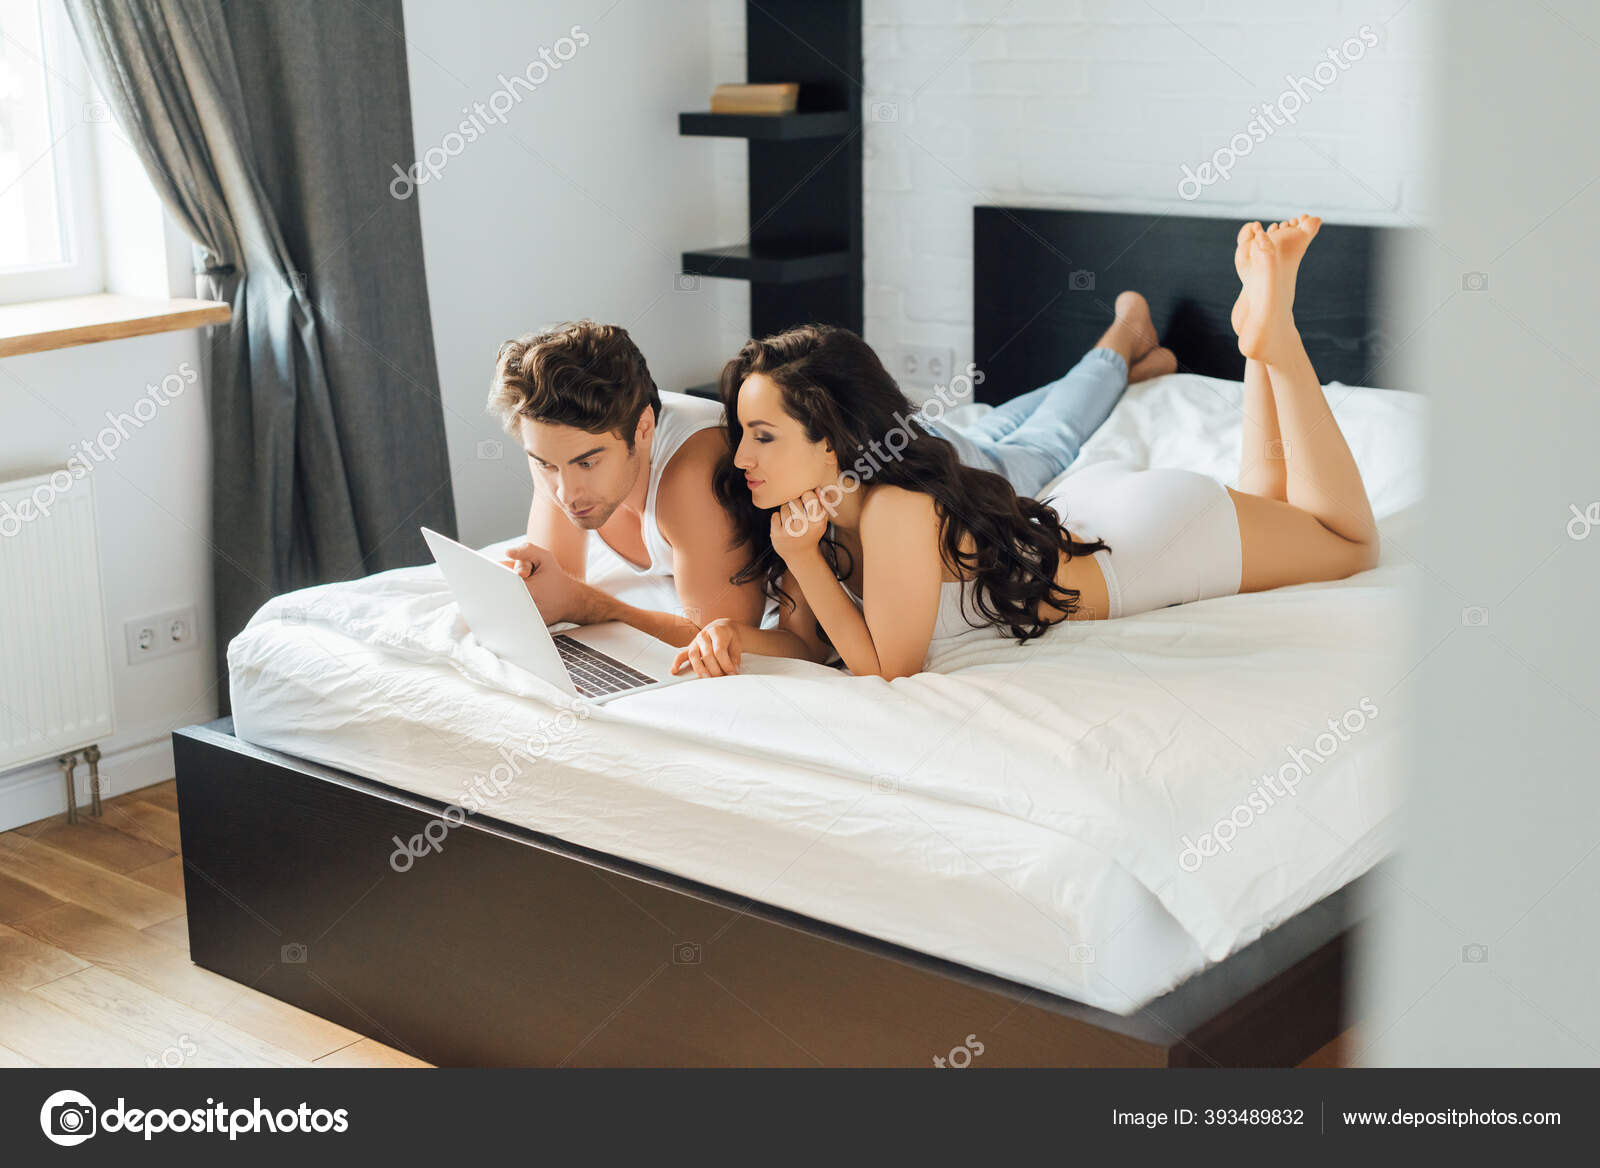 Пара устроила траходром на кровати